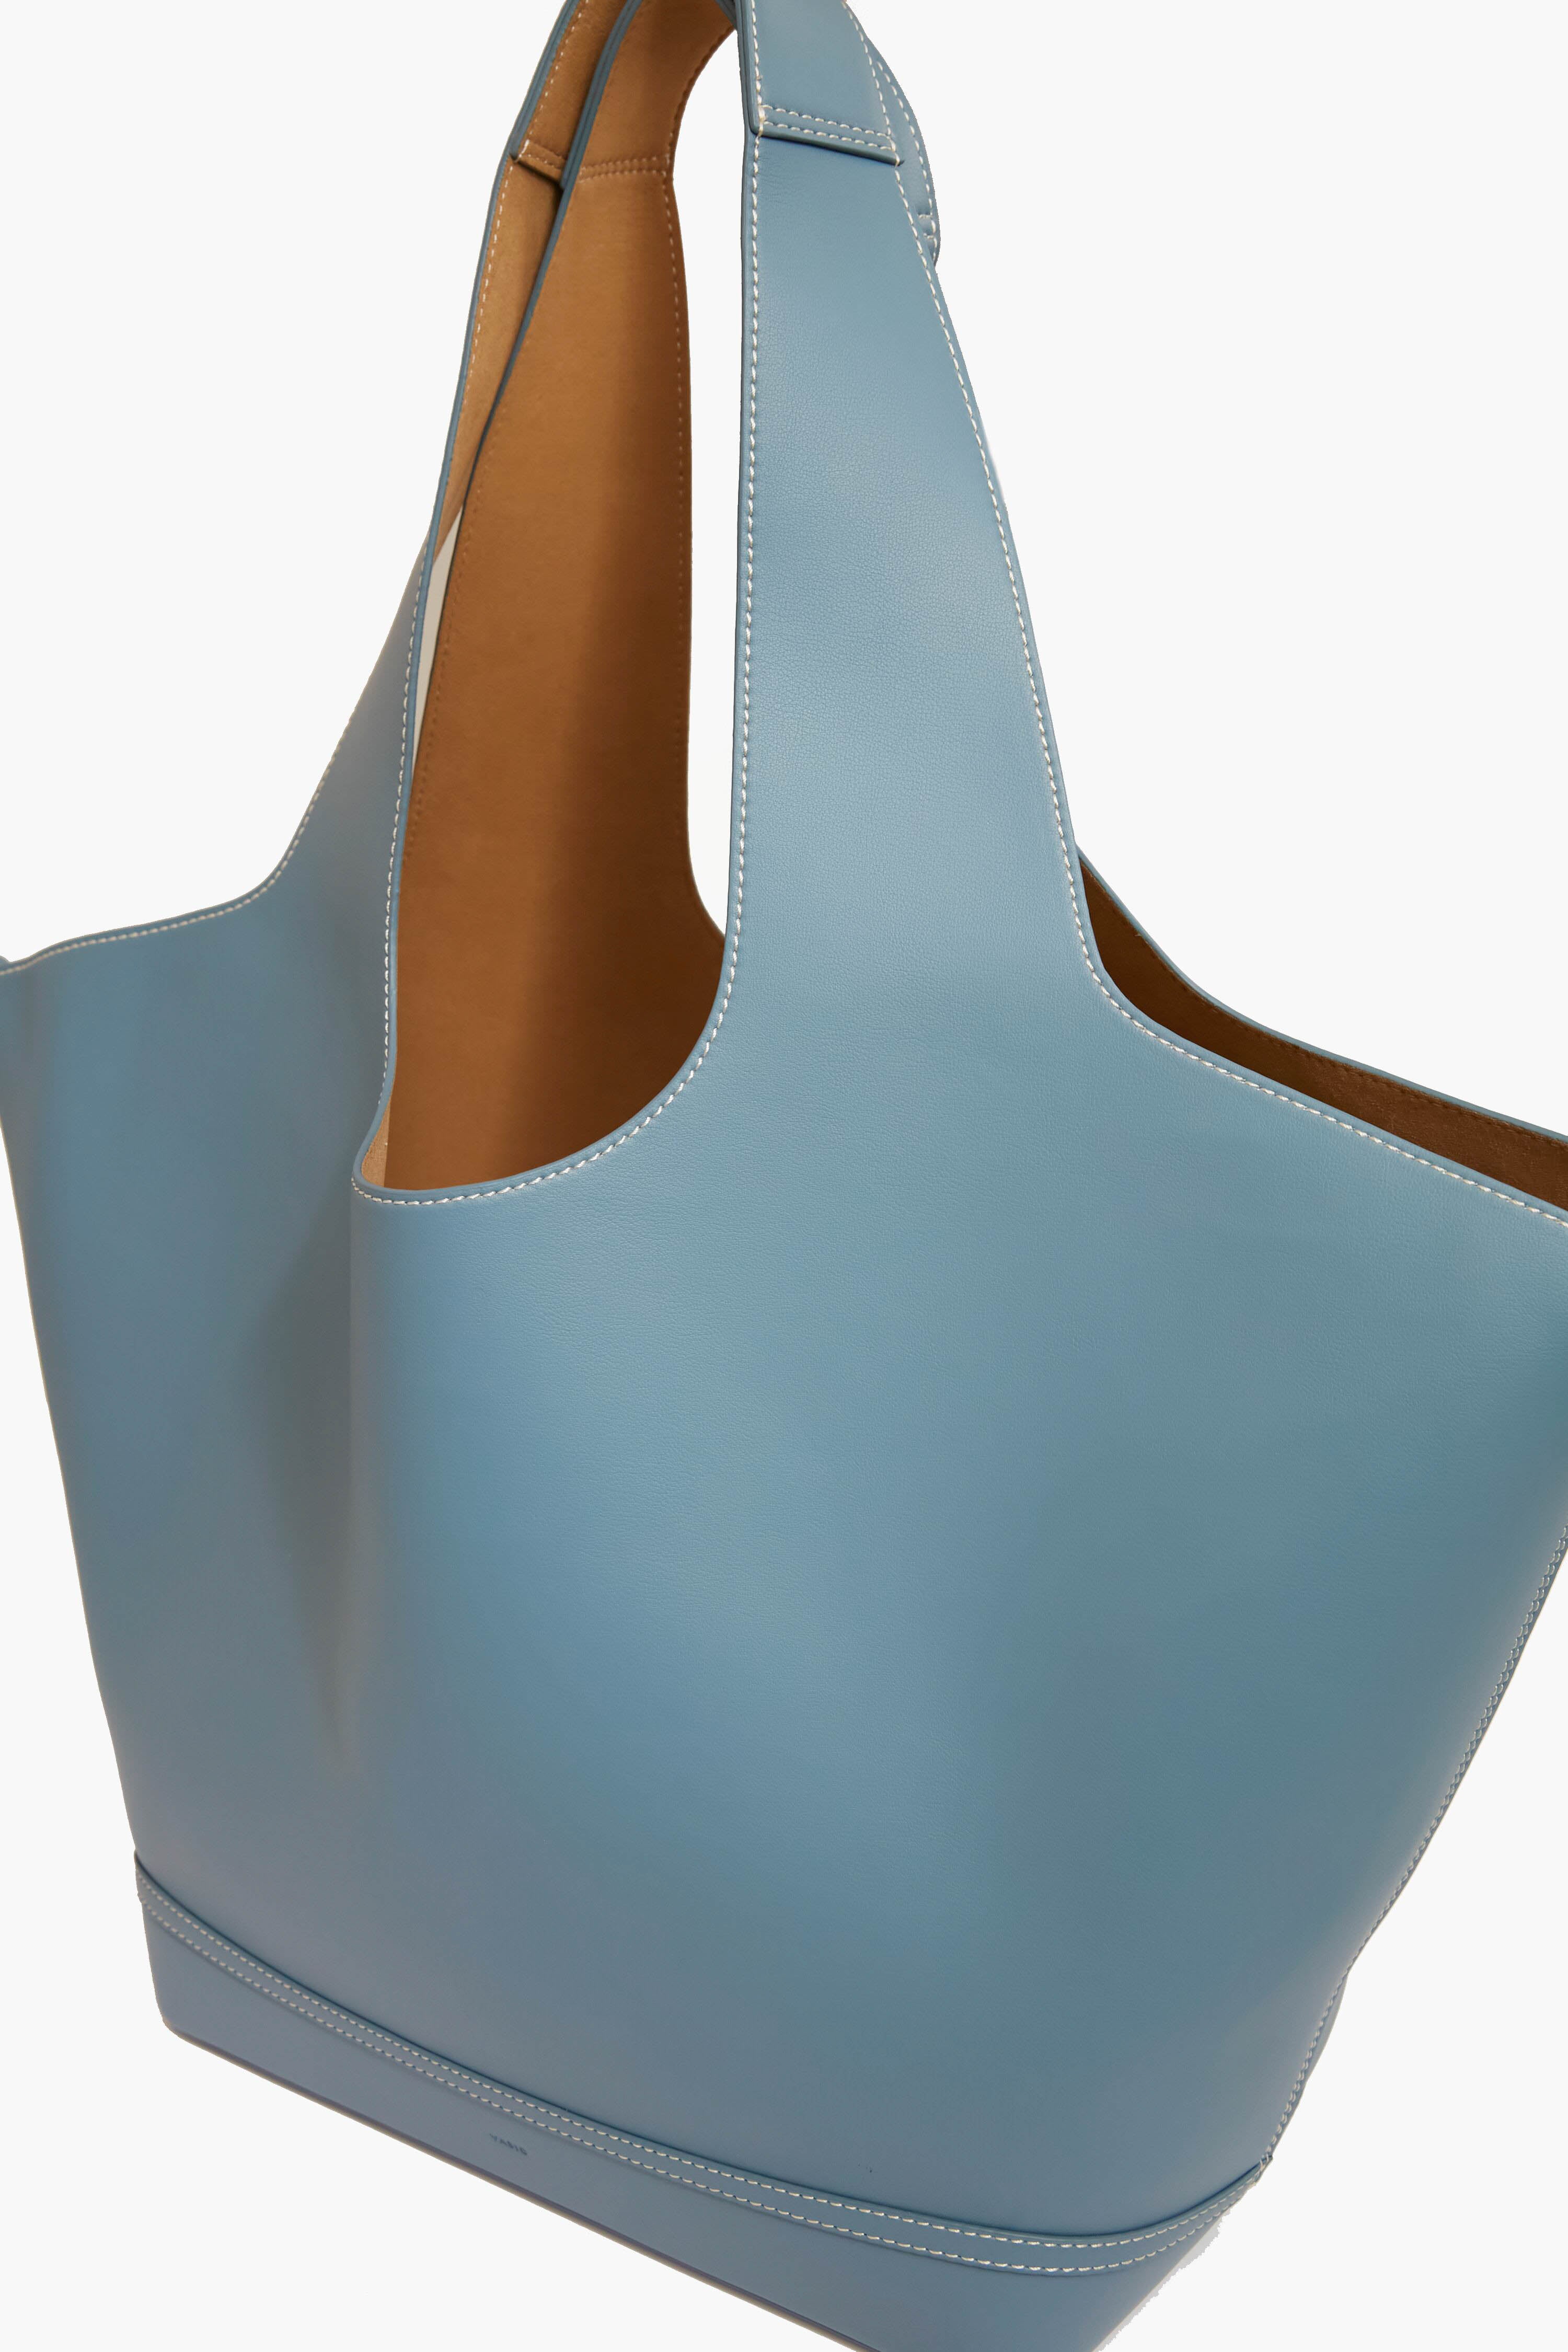 Aqua Mask Tote Bag